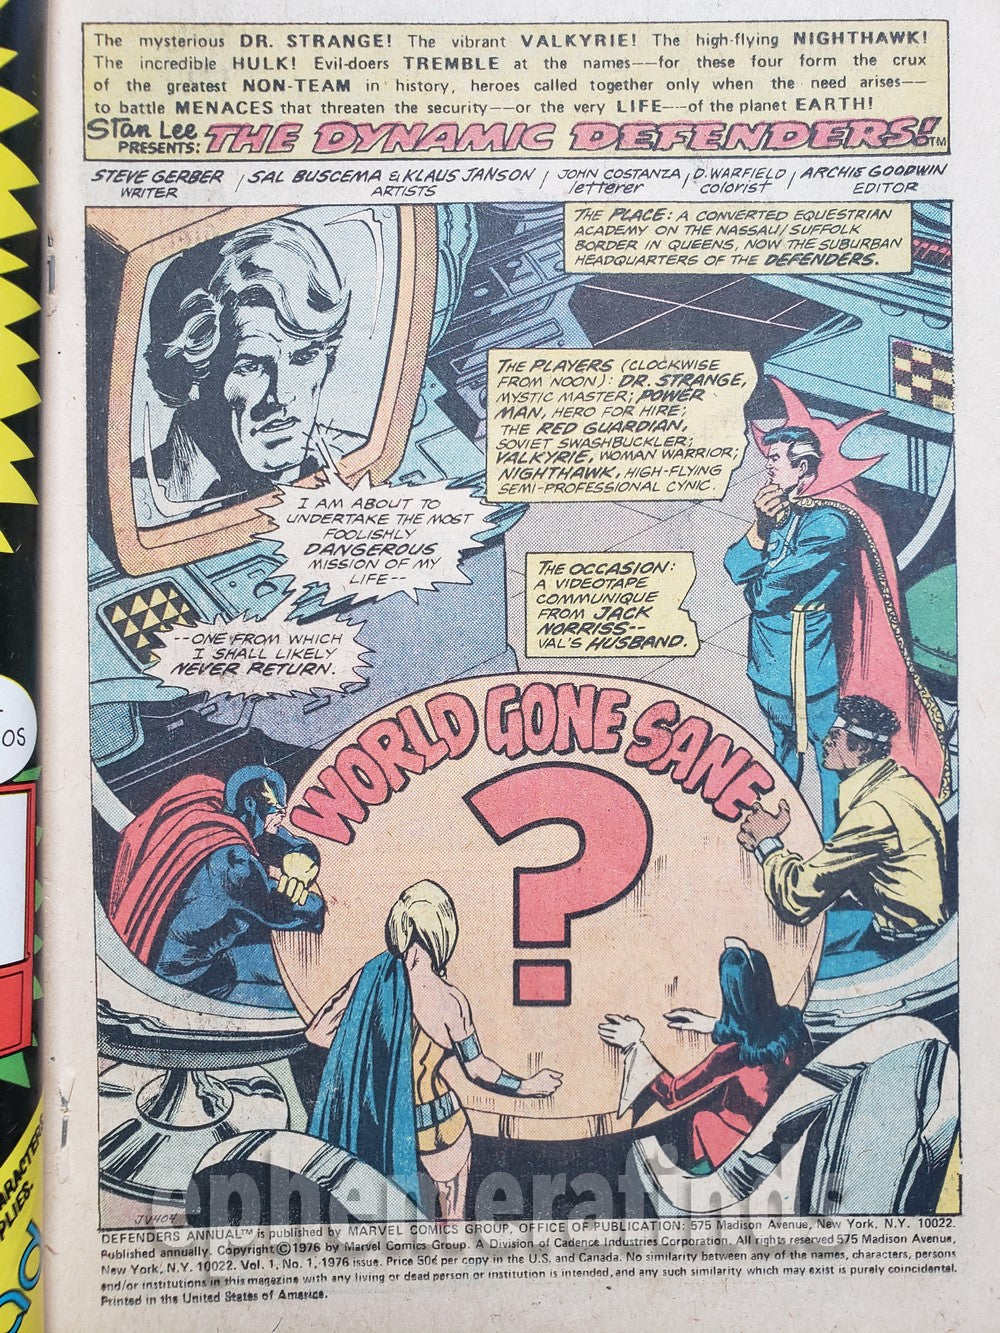 Marvel's The Defenders #1 Vintage King-Size Comic Book - Doctor Strange 1976